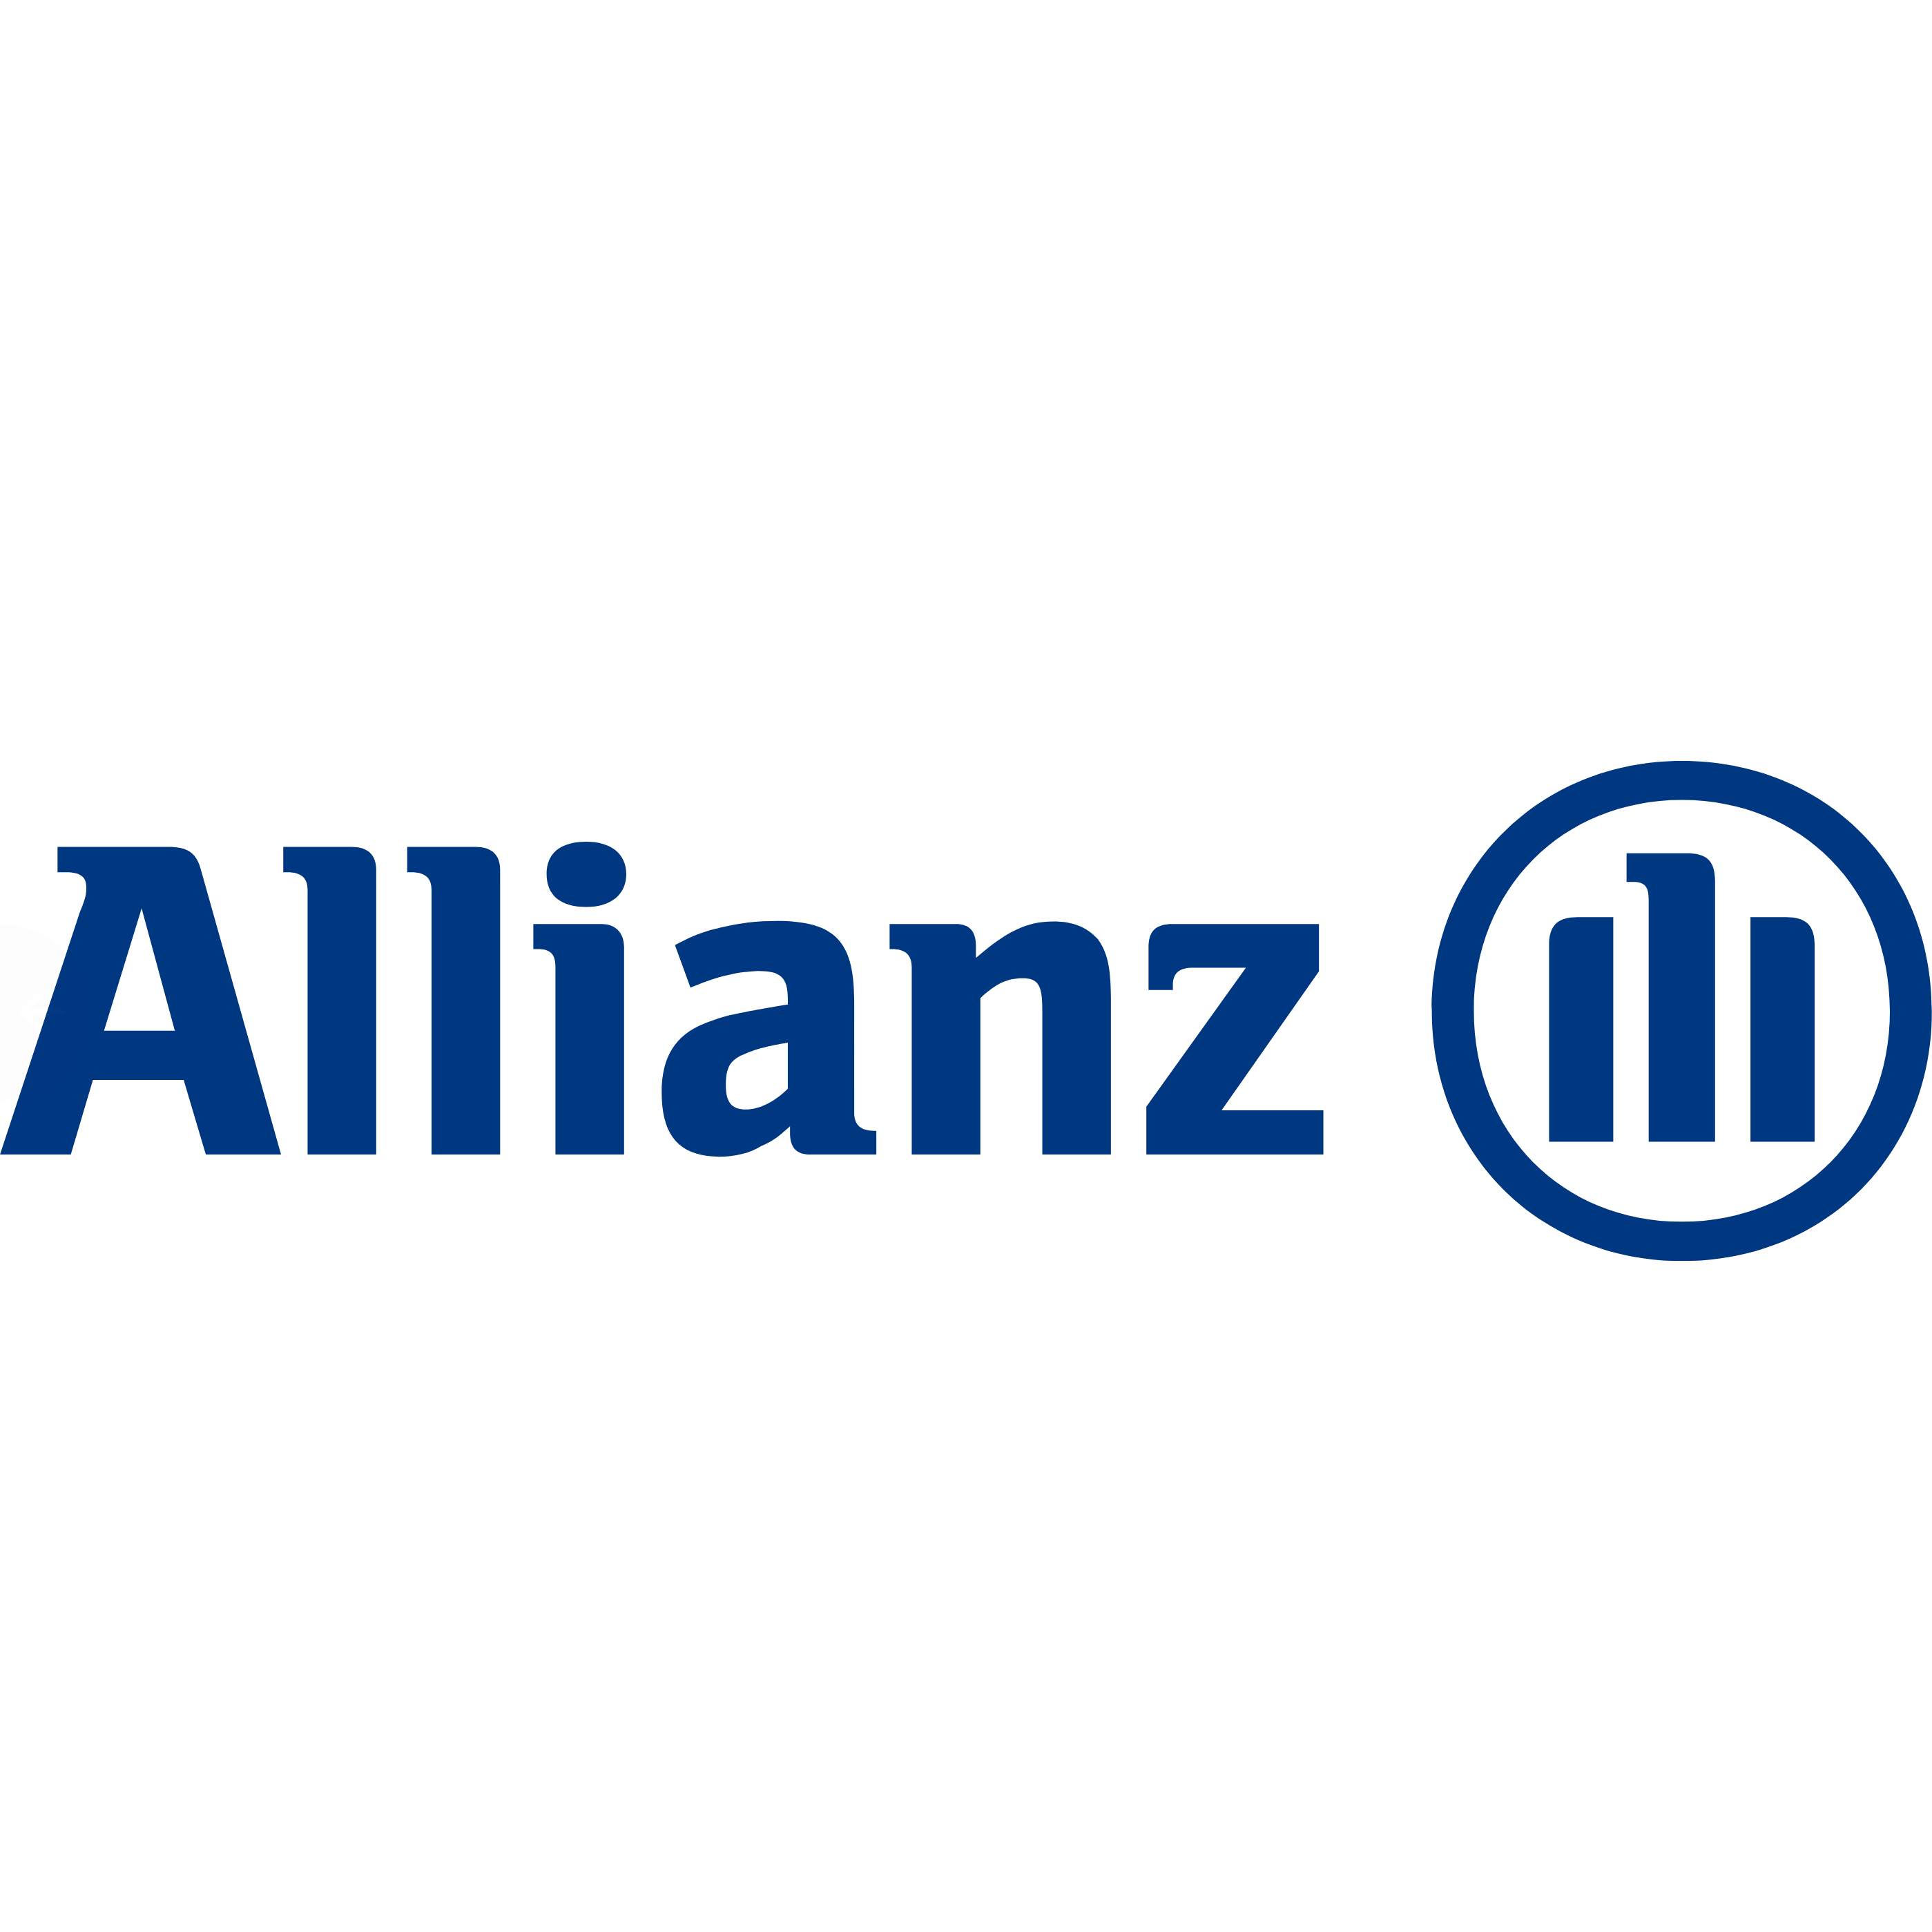 Annette Jarski Allianz Hauptvertretung Logo